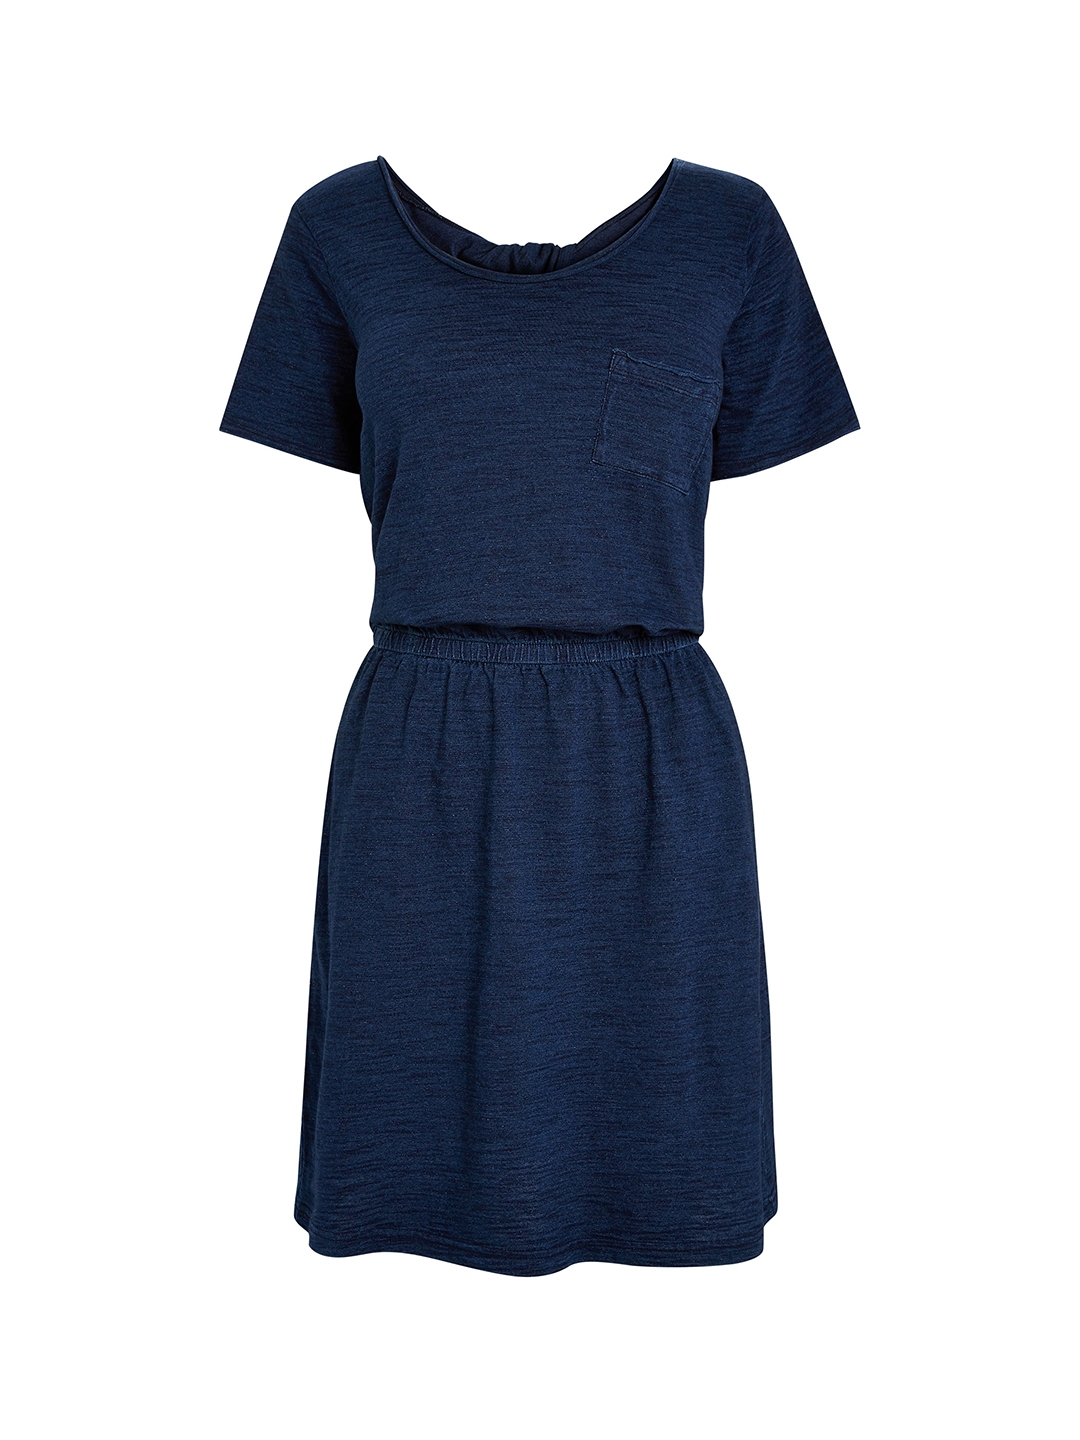 Buy Next Women Navy Blue Solid Drop Waist Dress - Dresses for Women ...